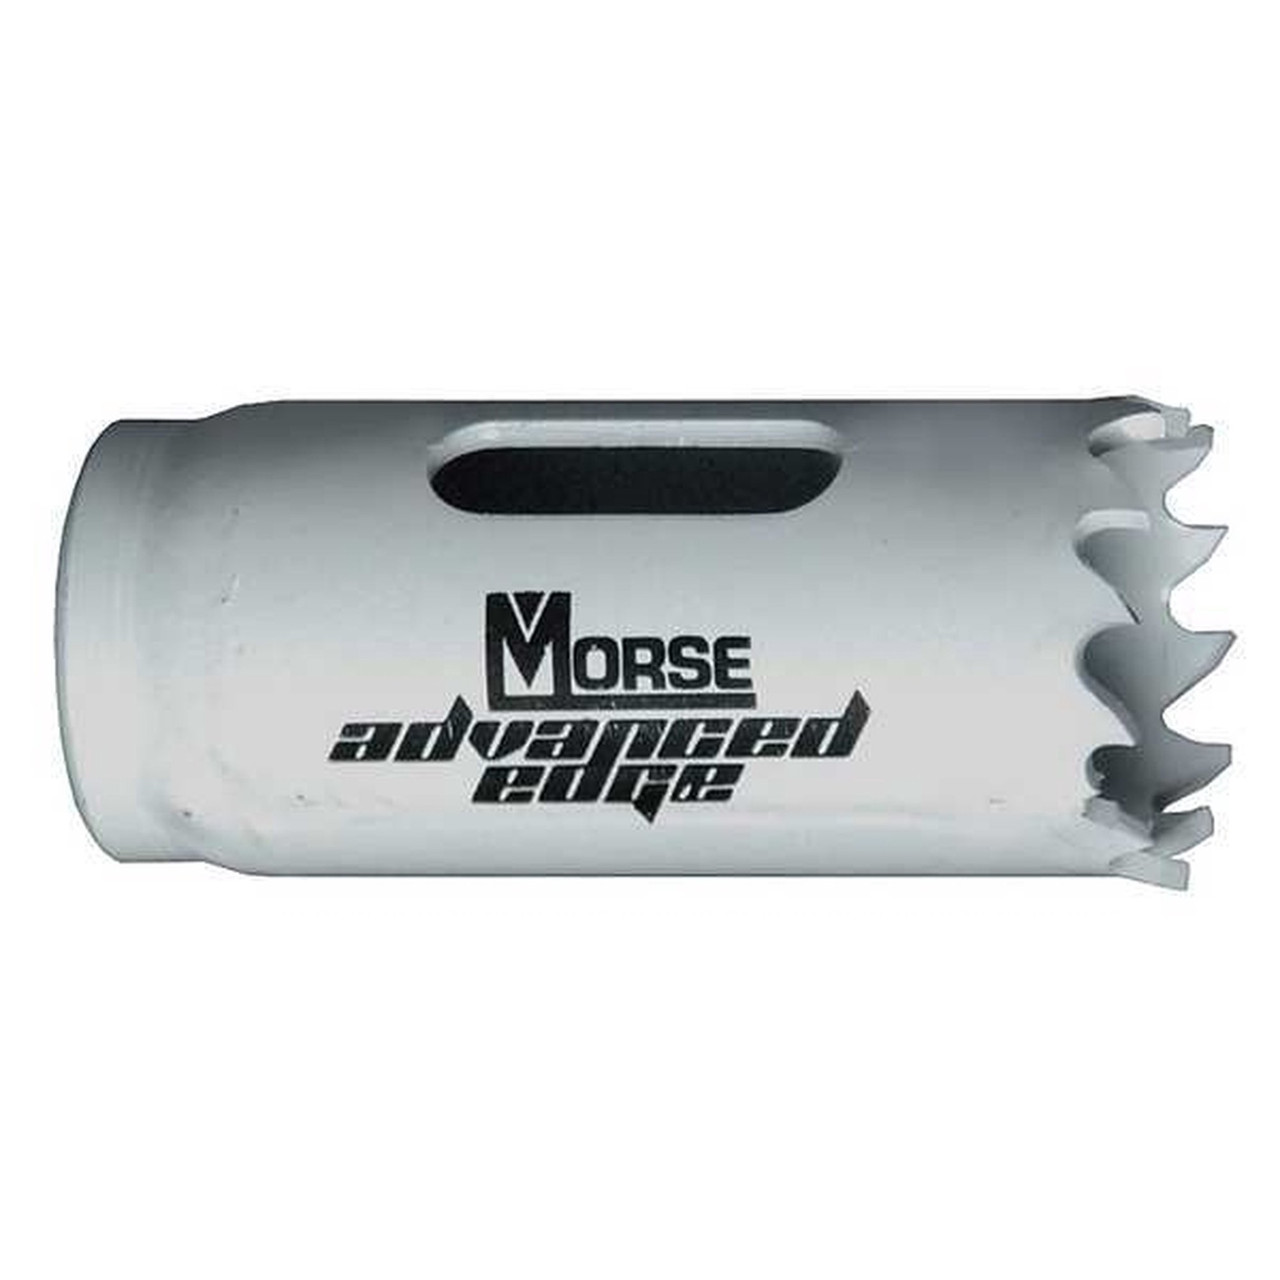 M.K. Morse (MK13) 13/16" Advanced Edge Bi-Metal Hole Saw